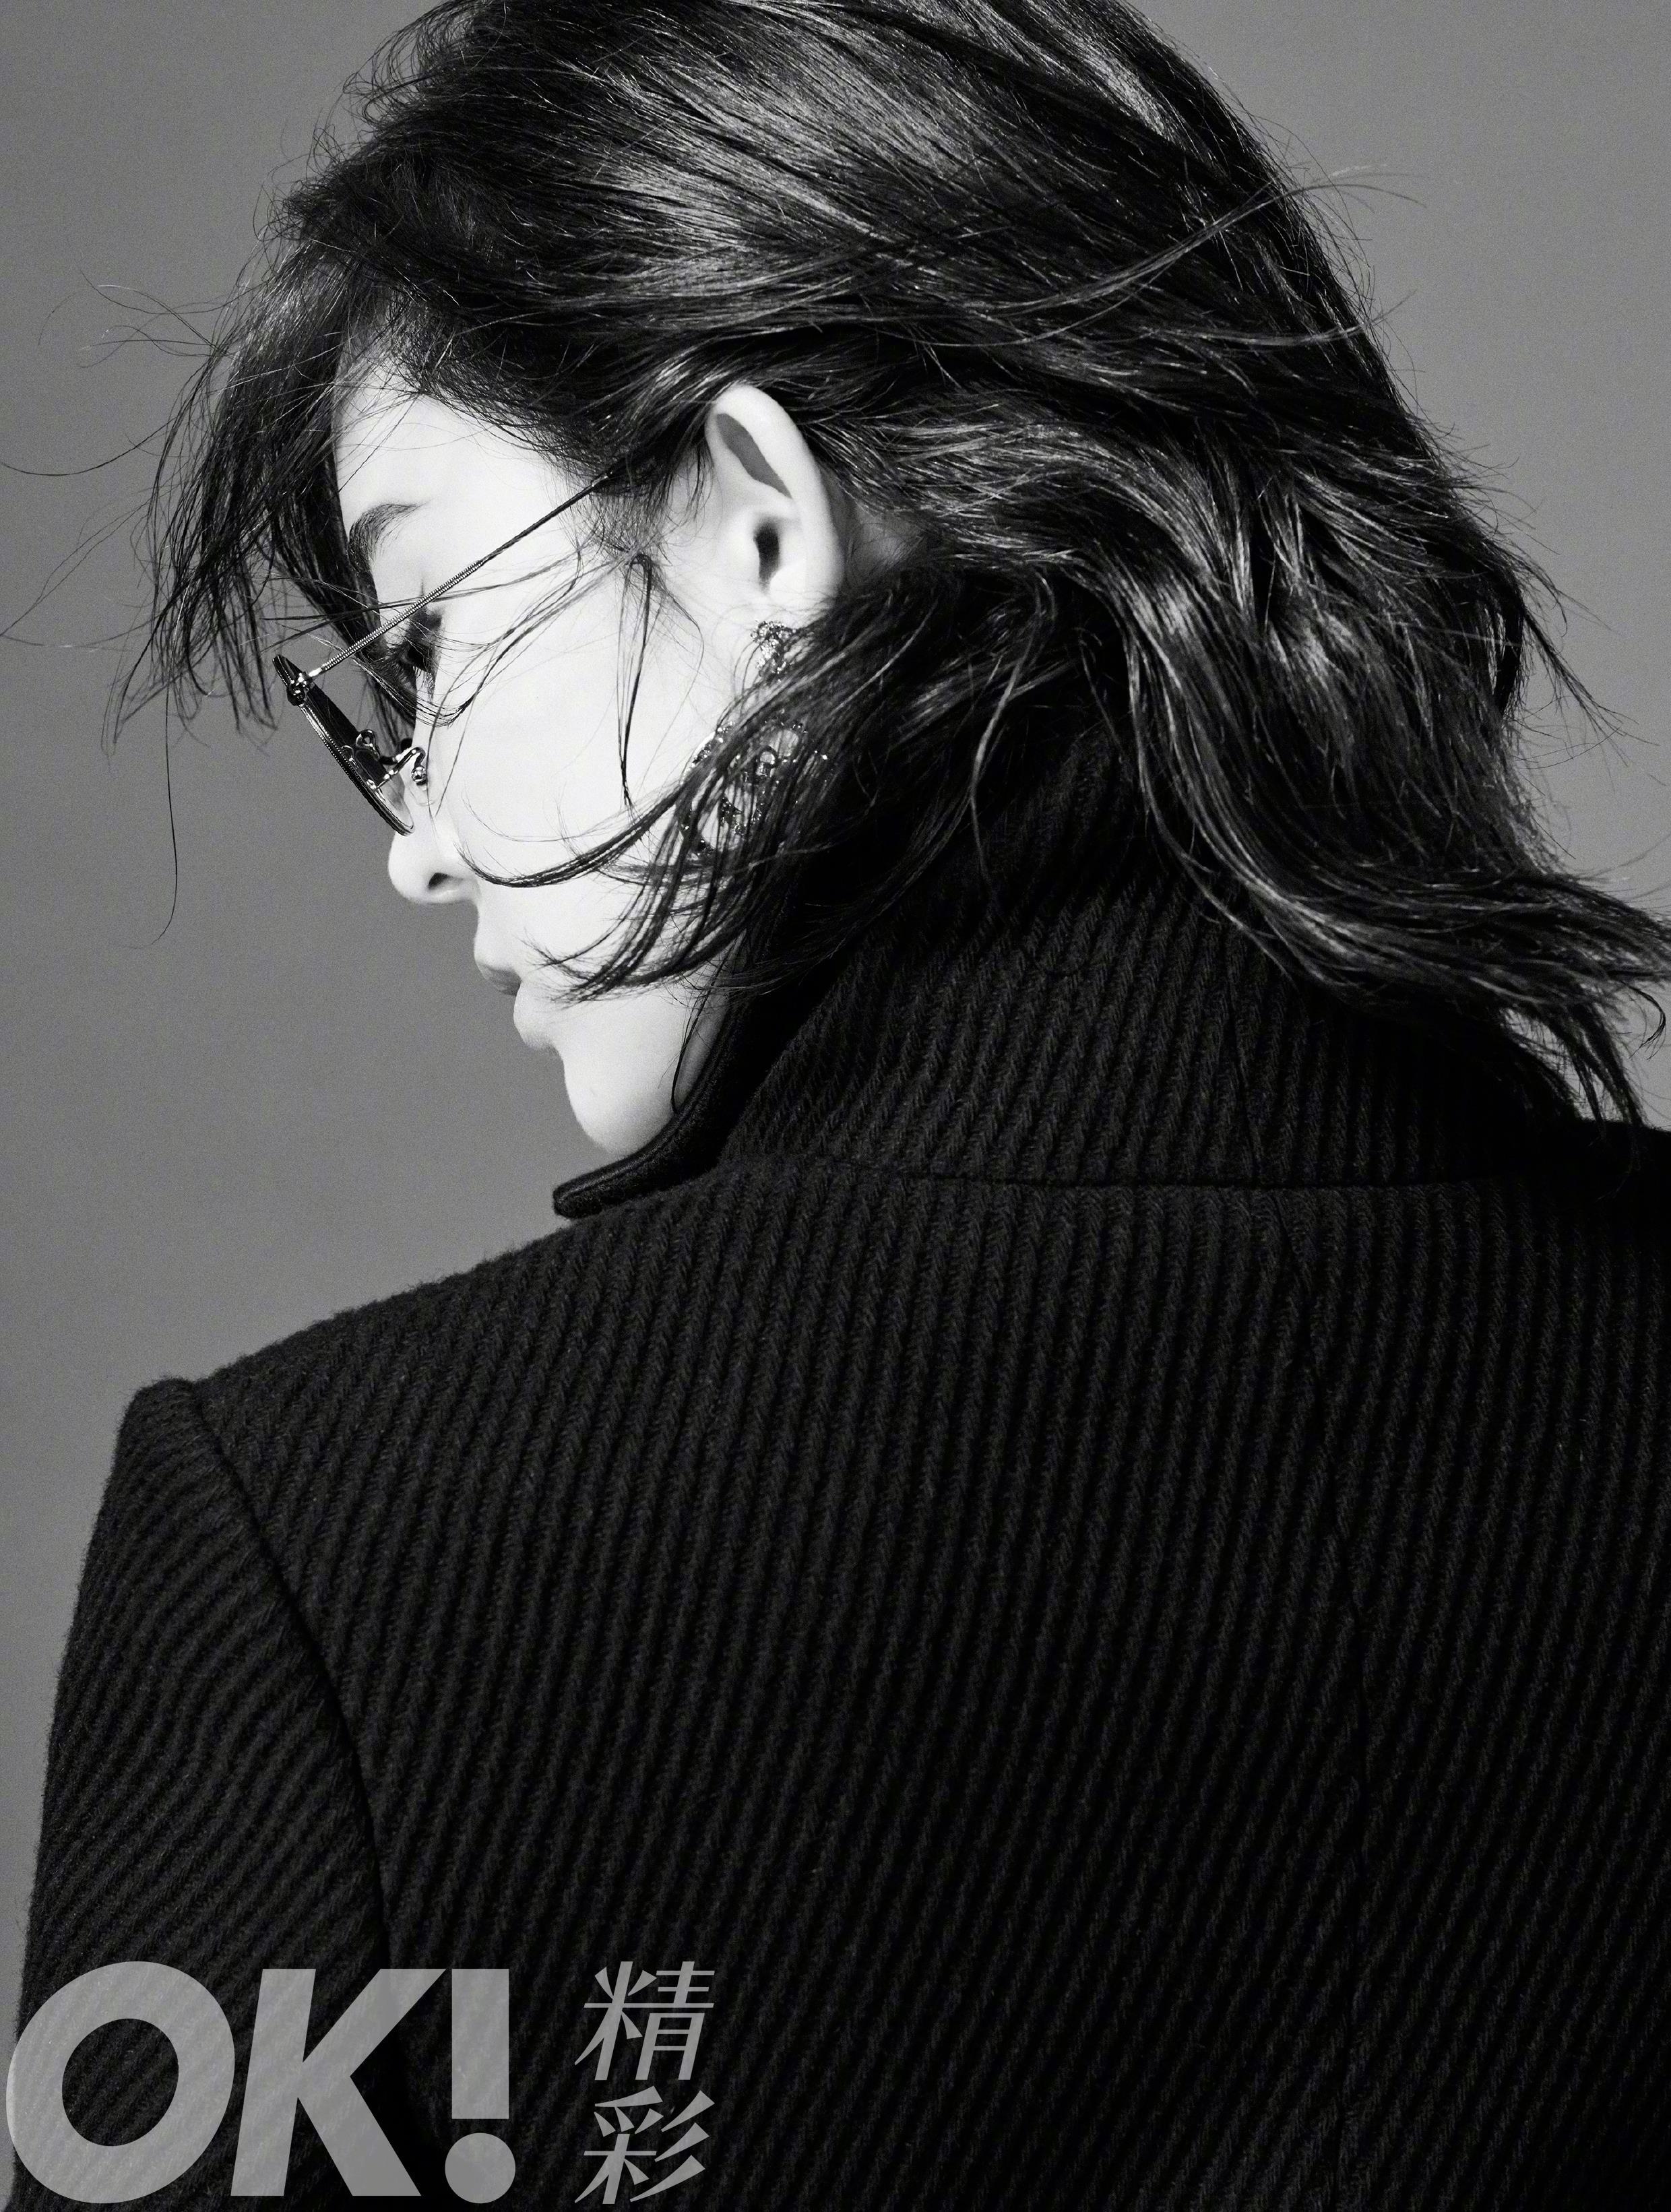 《OK!精彩》总第155期封面大片“古力娜扎”帅气黑白造型，一抹亮眼的红唇，穿着Chanel的美人啊！ ​​​​,